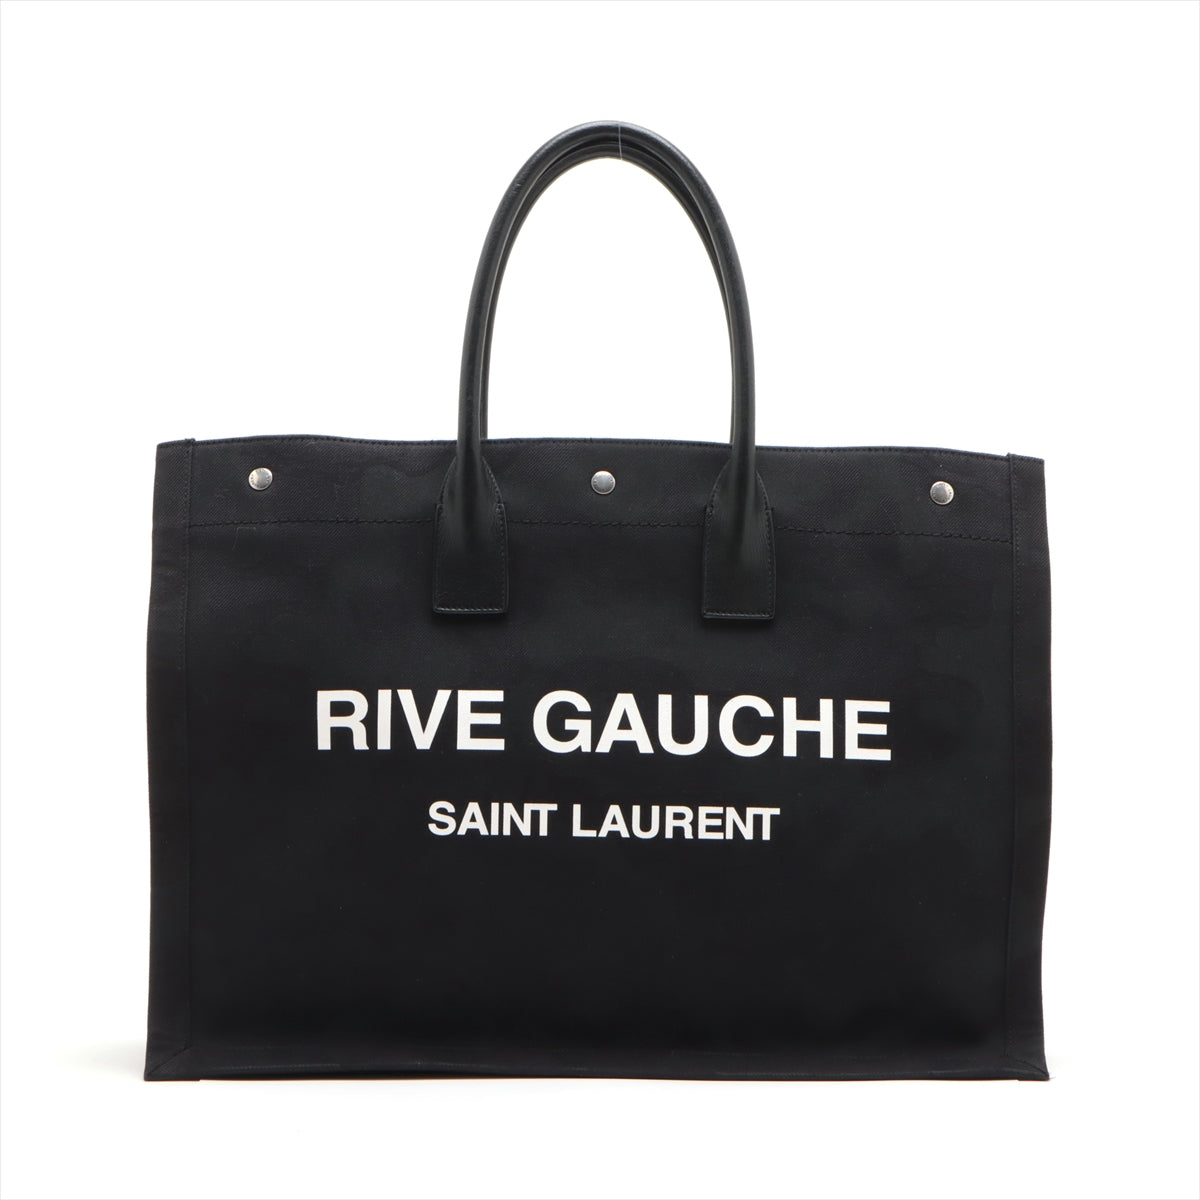 Saint Laurent Paris Rive Gauche Canvas & leather Tote bag Black 509415